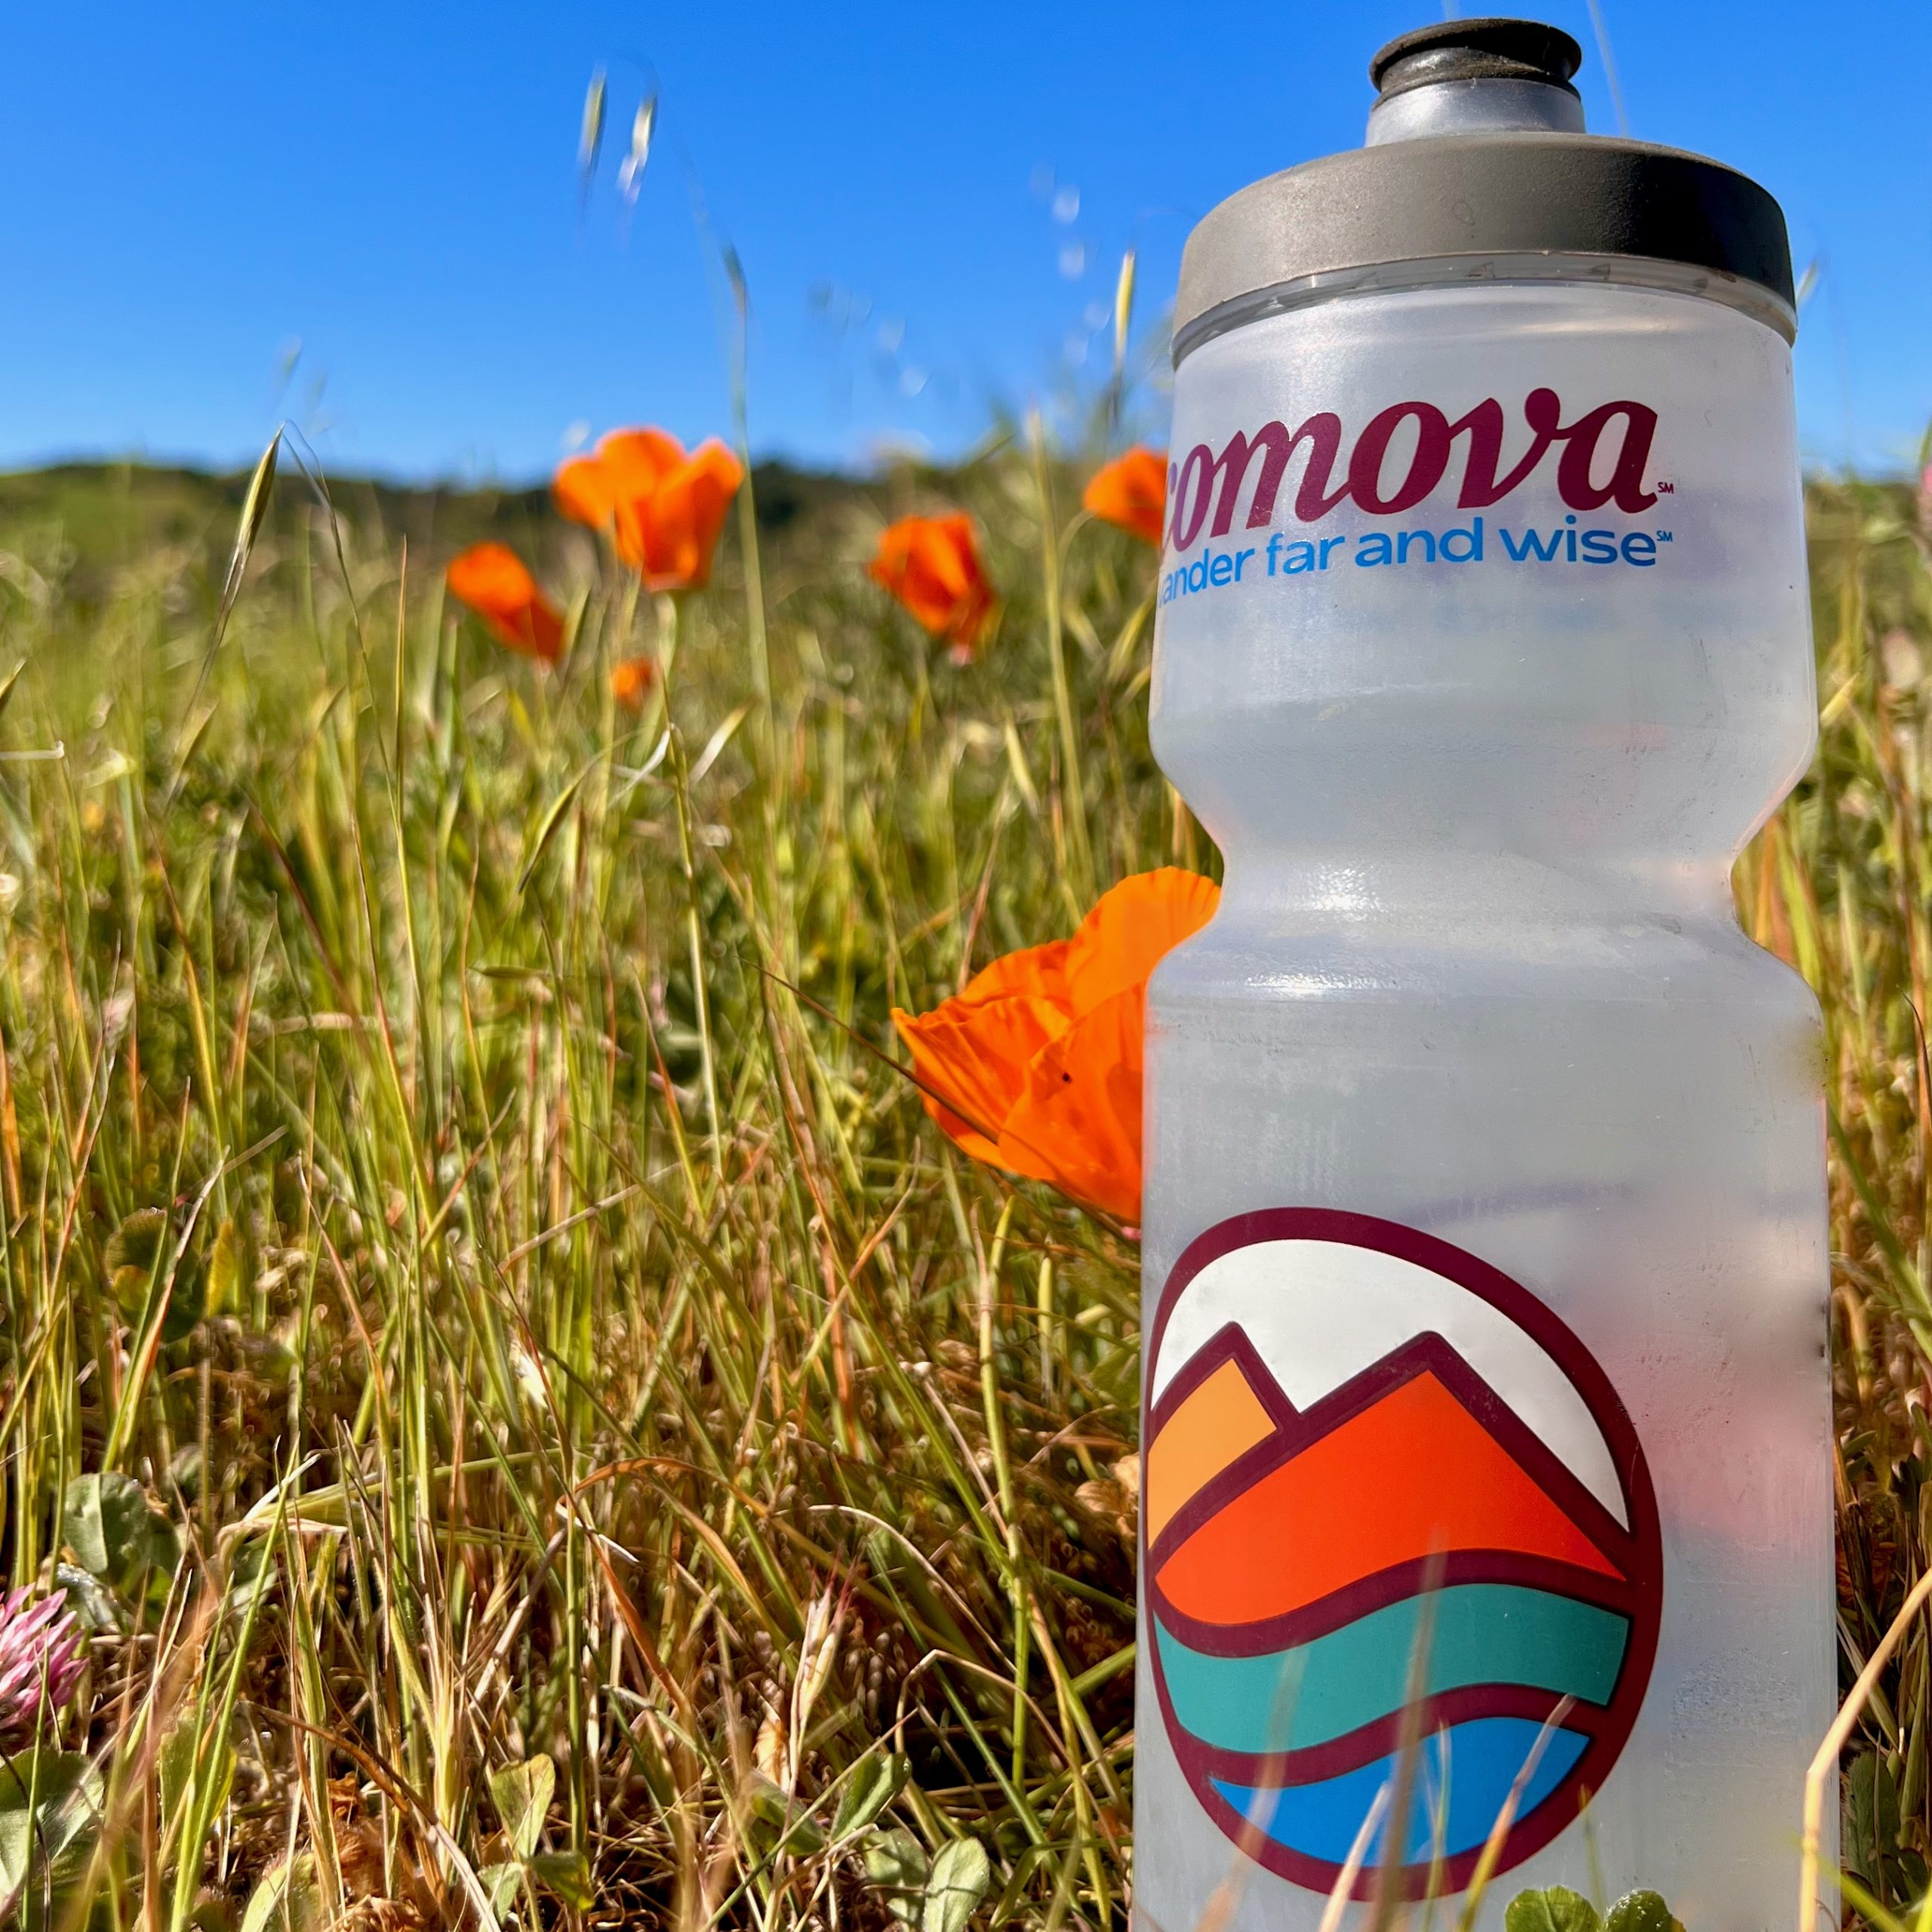 Comova Water Bottle - Cycling Trips, California Adventure Cycling